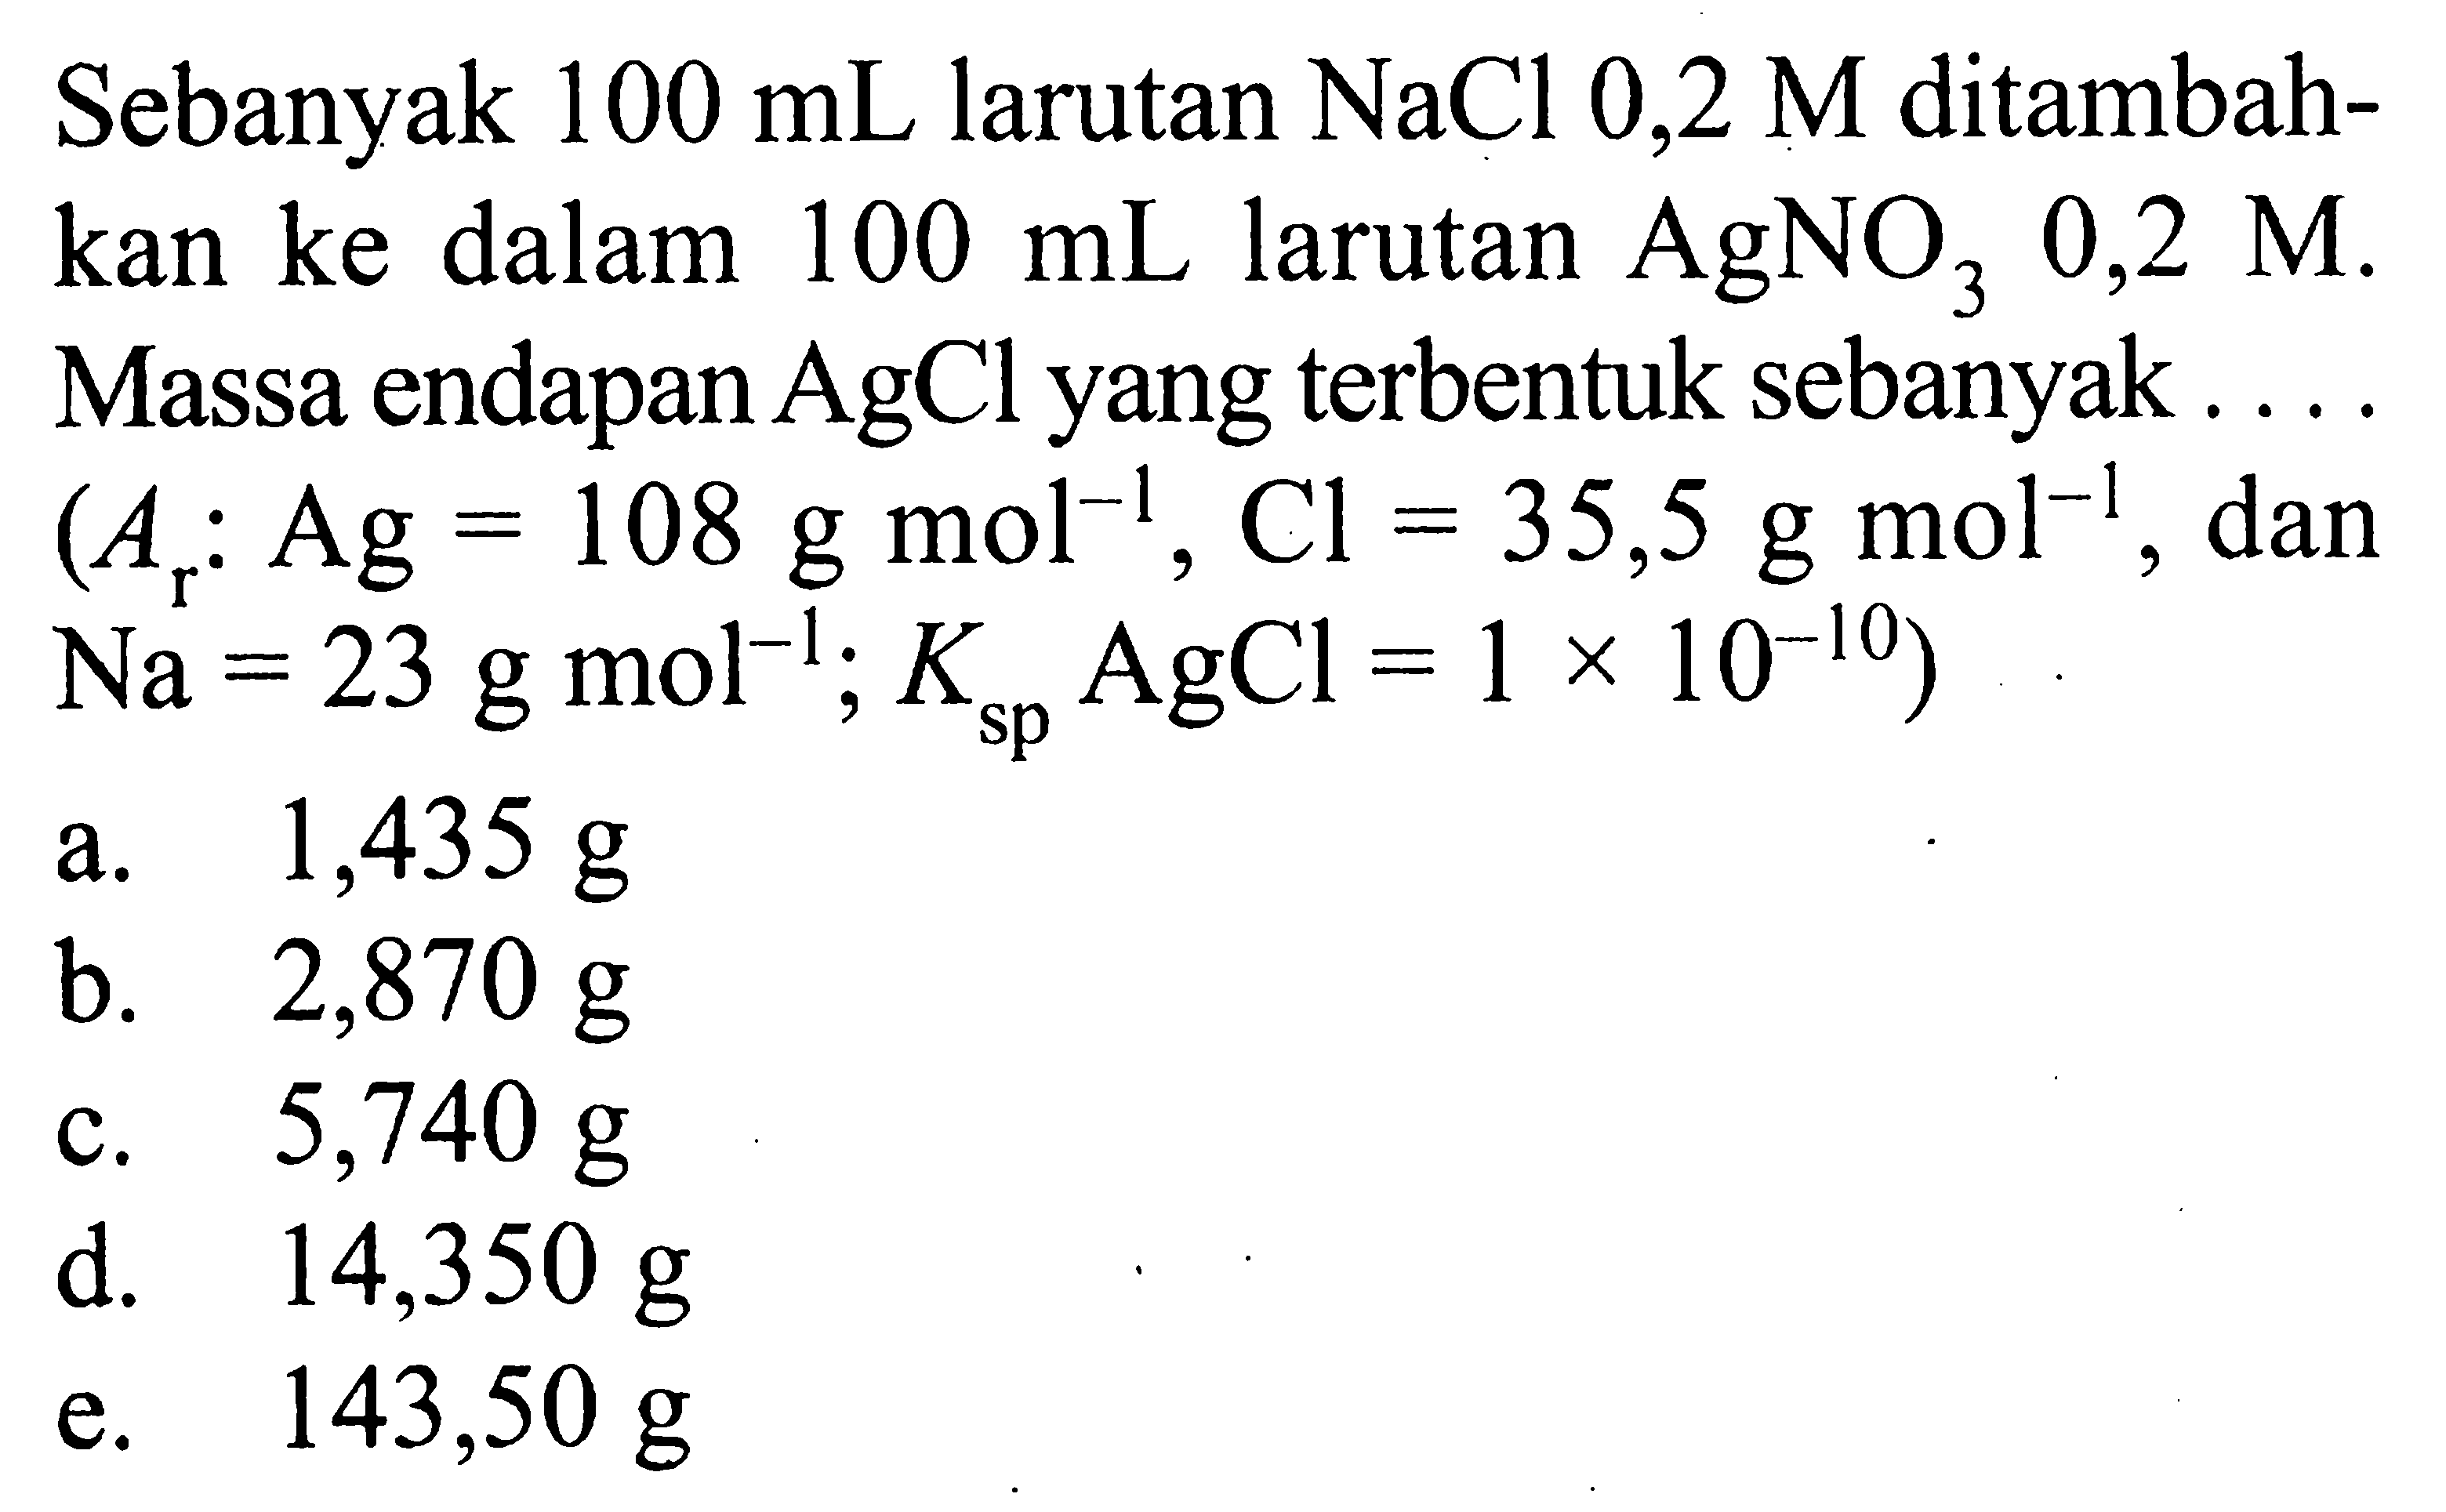 Sebanyak  100 mL  larutan  NaCl 0,2 M  ditambahkan ke dalam  100 mL  larutan  AgNO3 0,2 M. Massa endapan  AgCl  yang terbentuk sebanyak...  (Ar: Ag=108 g mol^(-1), Cl=35,5 g mol^(-1). , dan  .Na=23 g mol^(-1) ; Ksp AgCl=1 x 10^(-10)) 